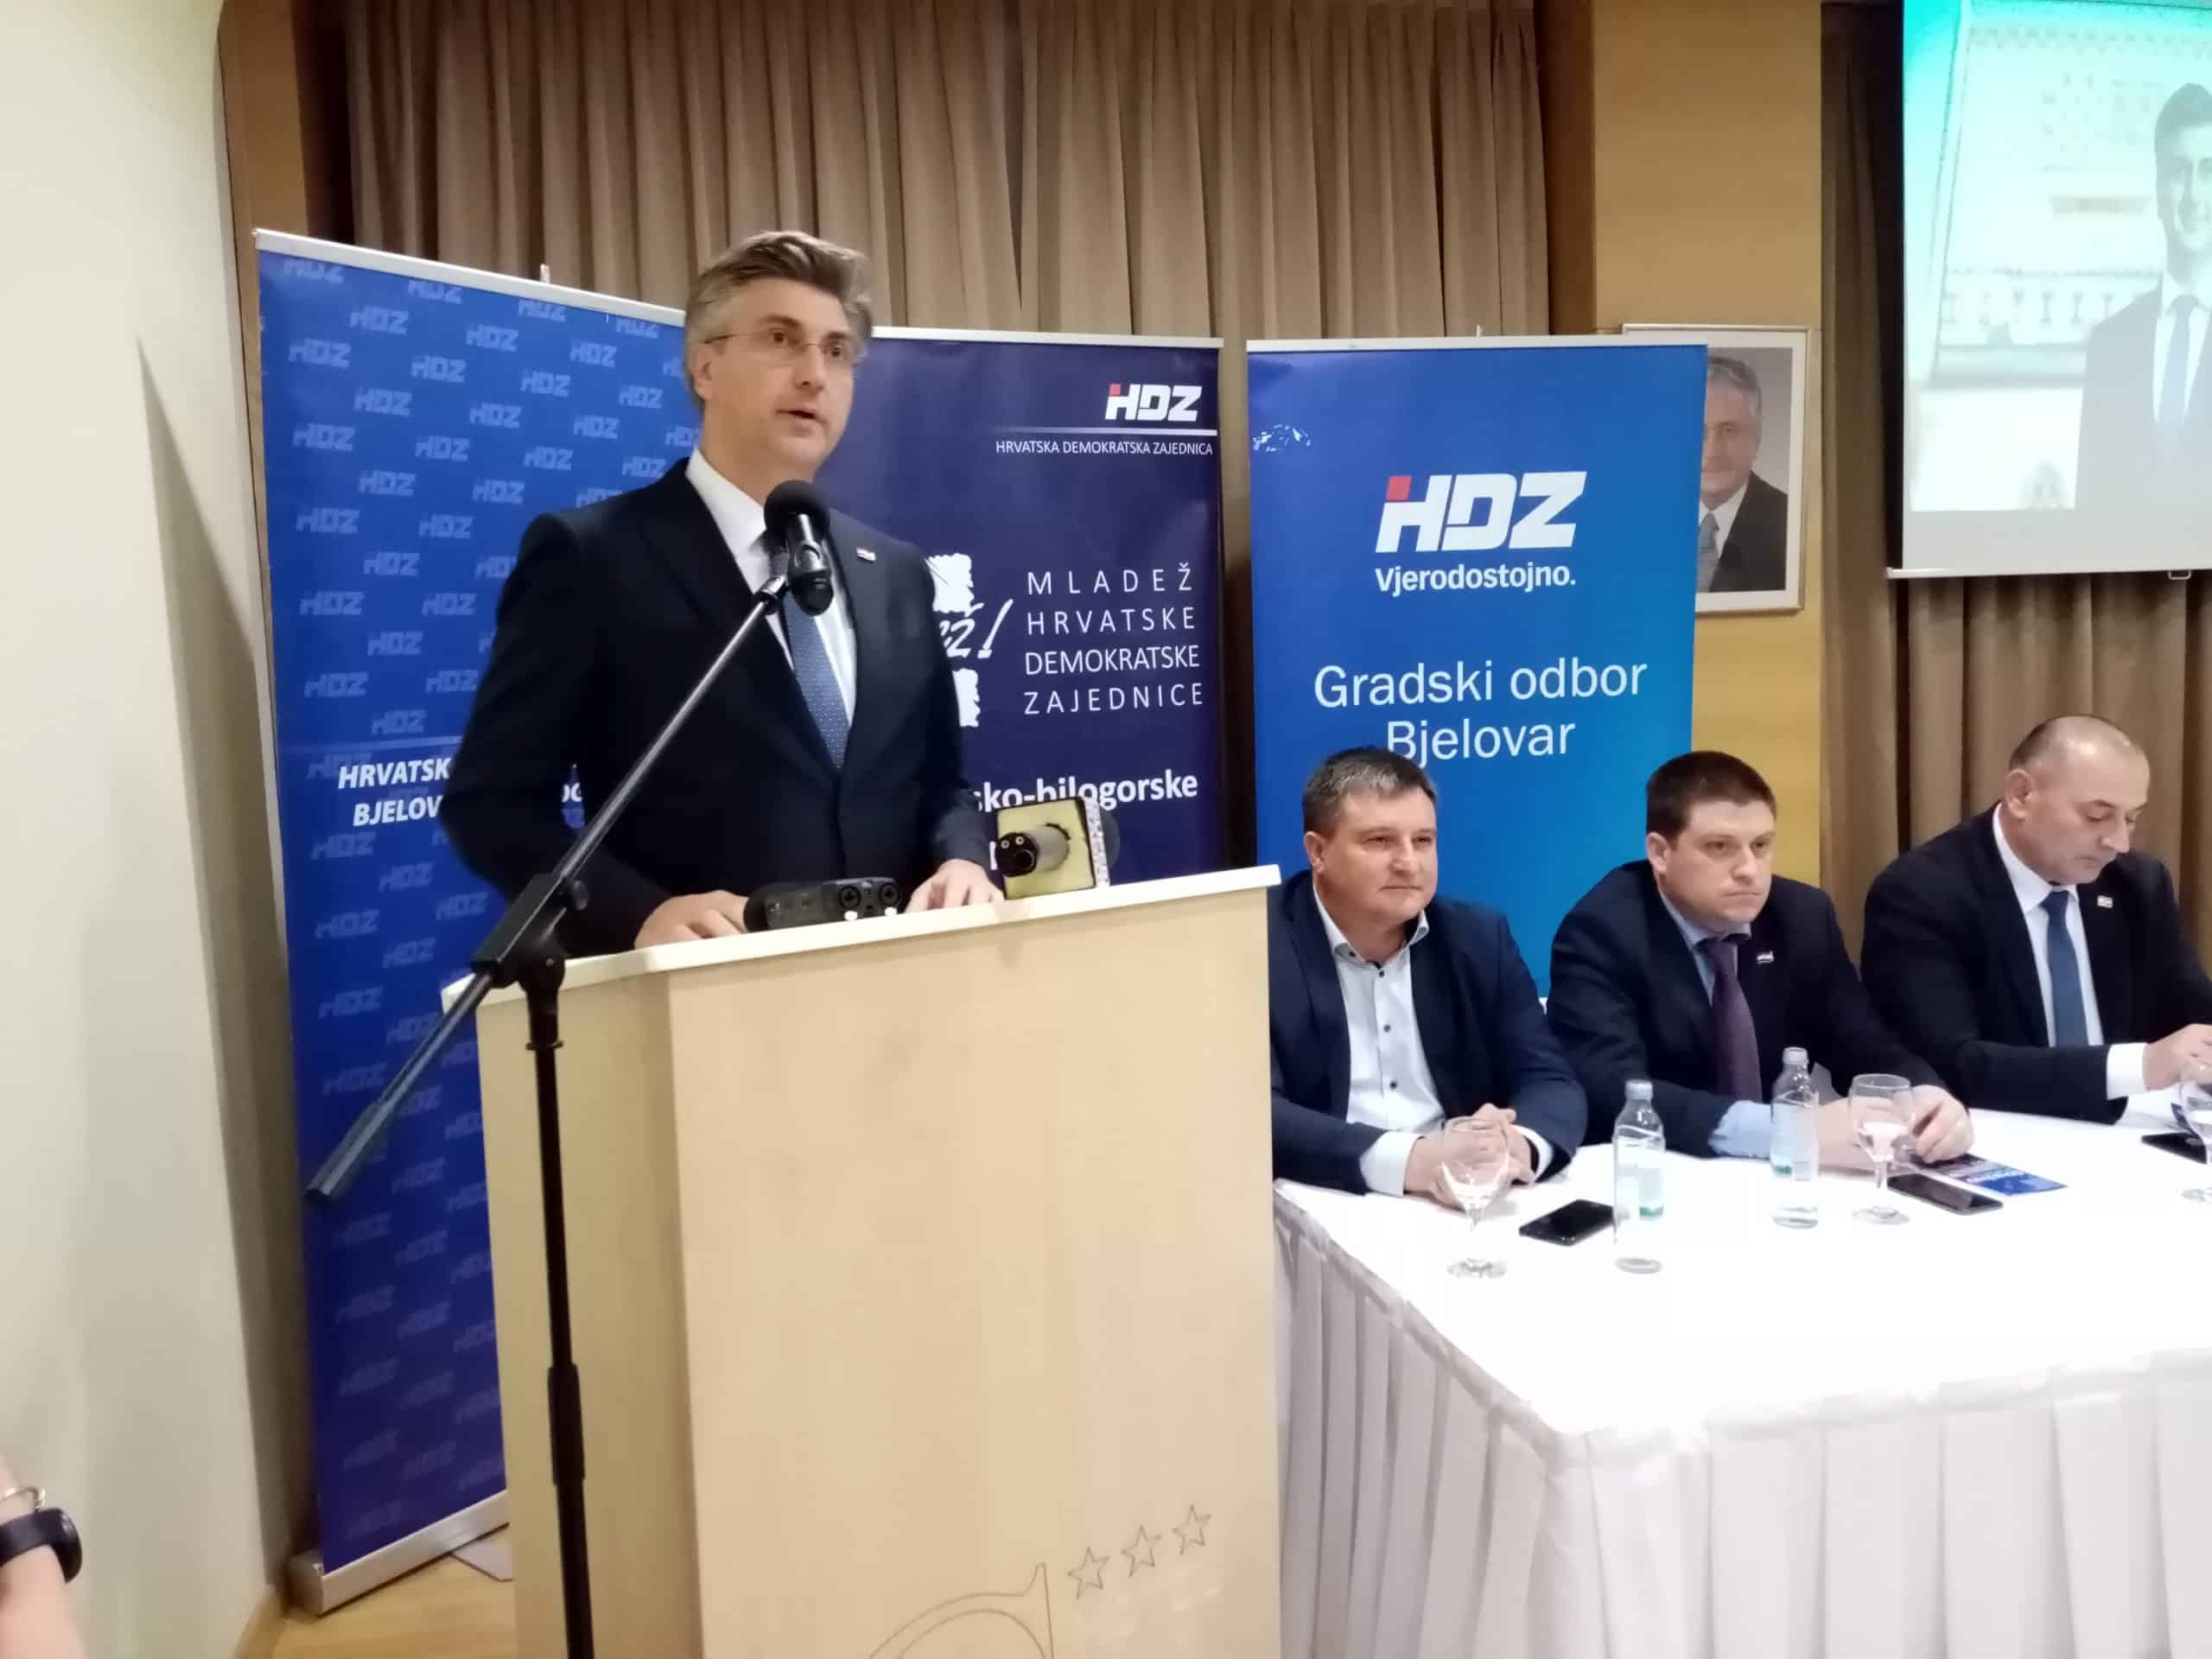 PLENKOVIĆ POTVRDIO Na parlamentarne izbore HDZ I HSLS idu zajedno